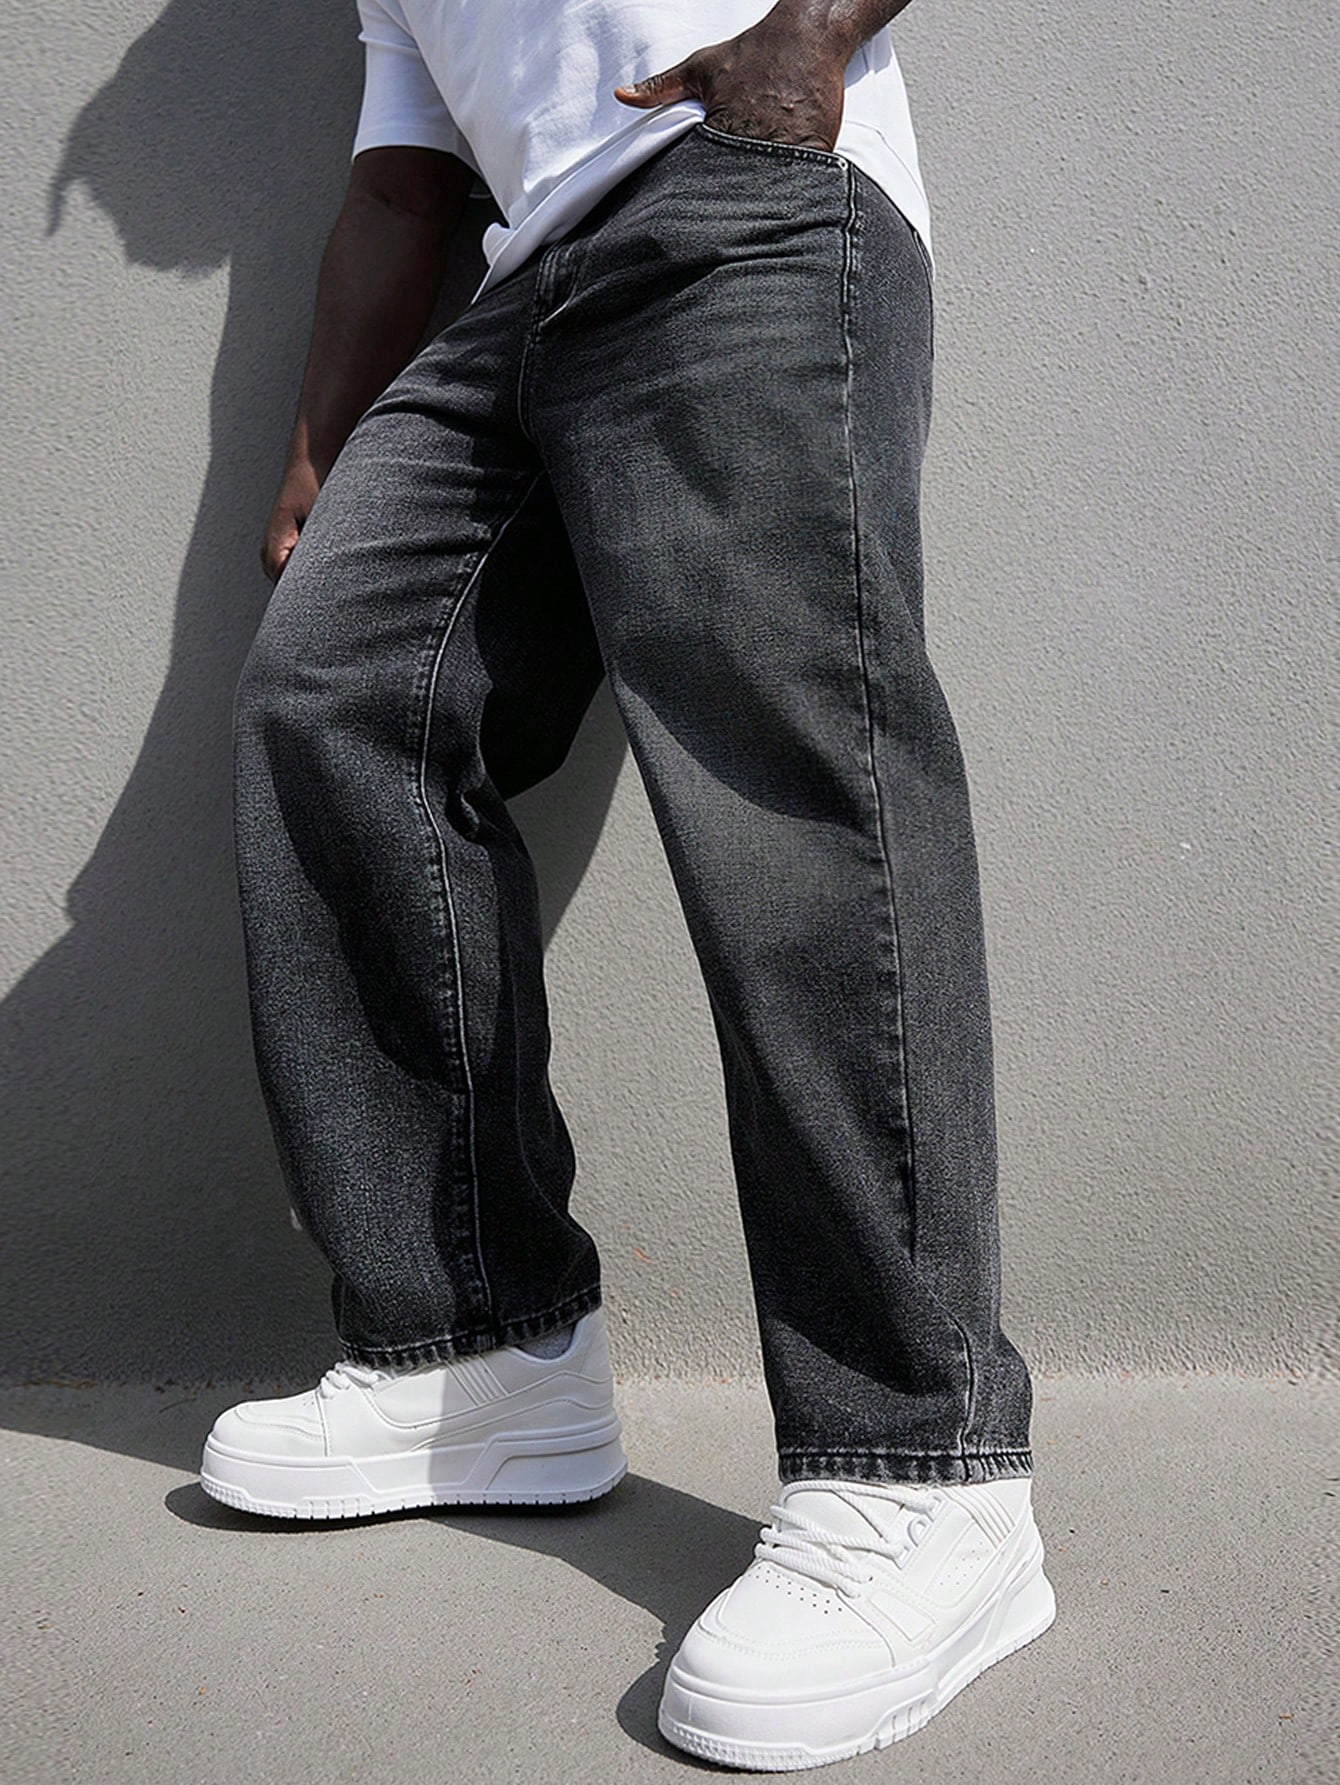 Мужские прямые джинсы больших размеров Manfinity Hypemode со средней посадкой, черный